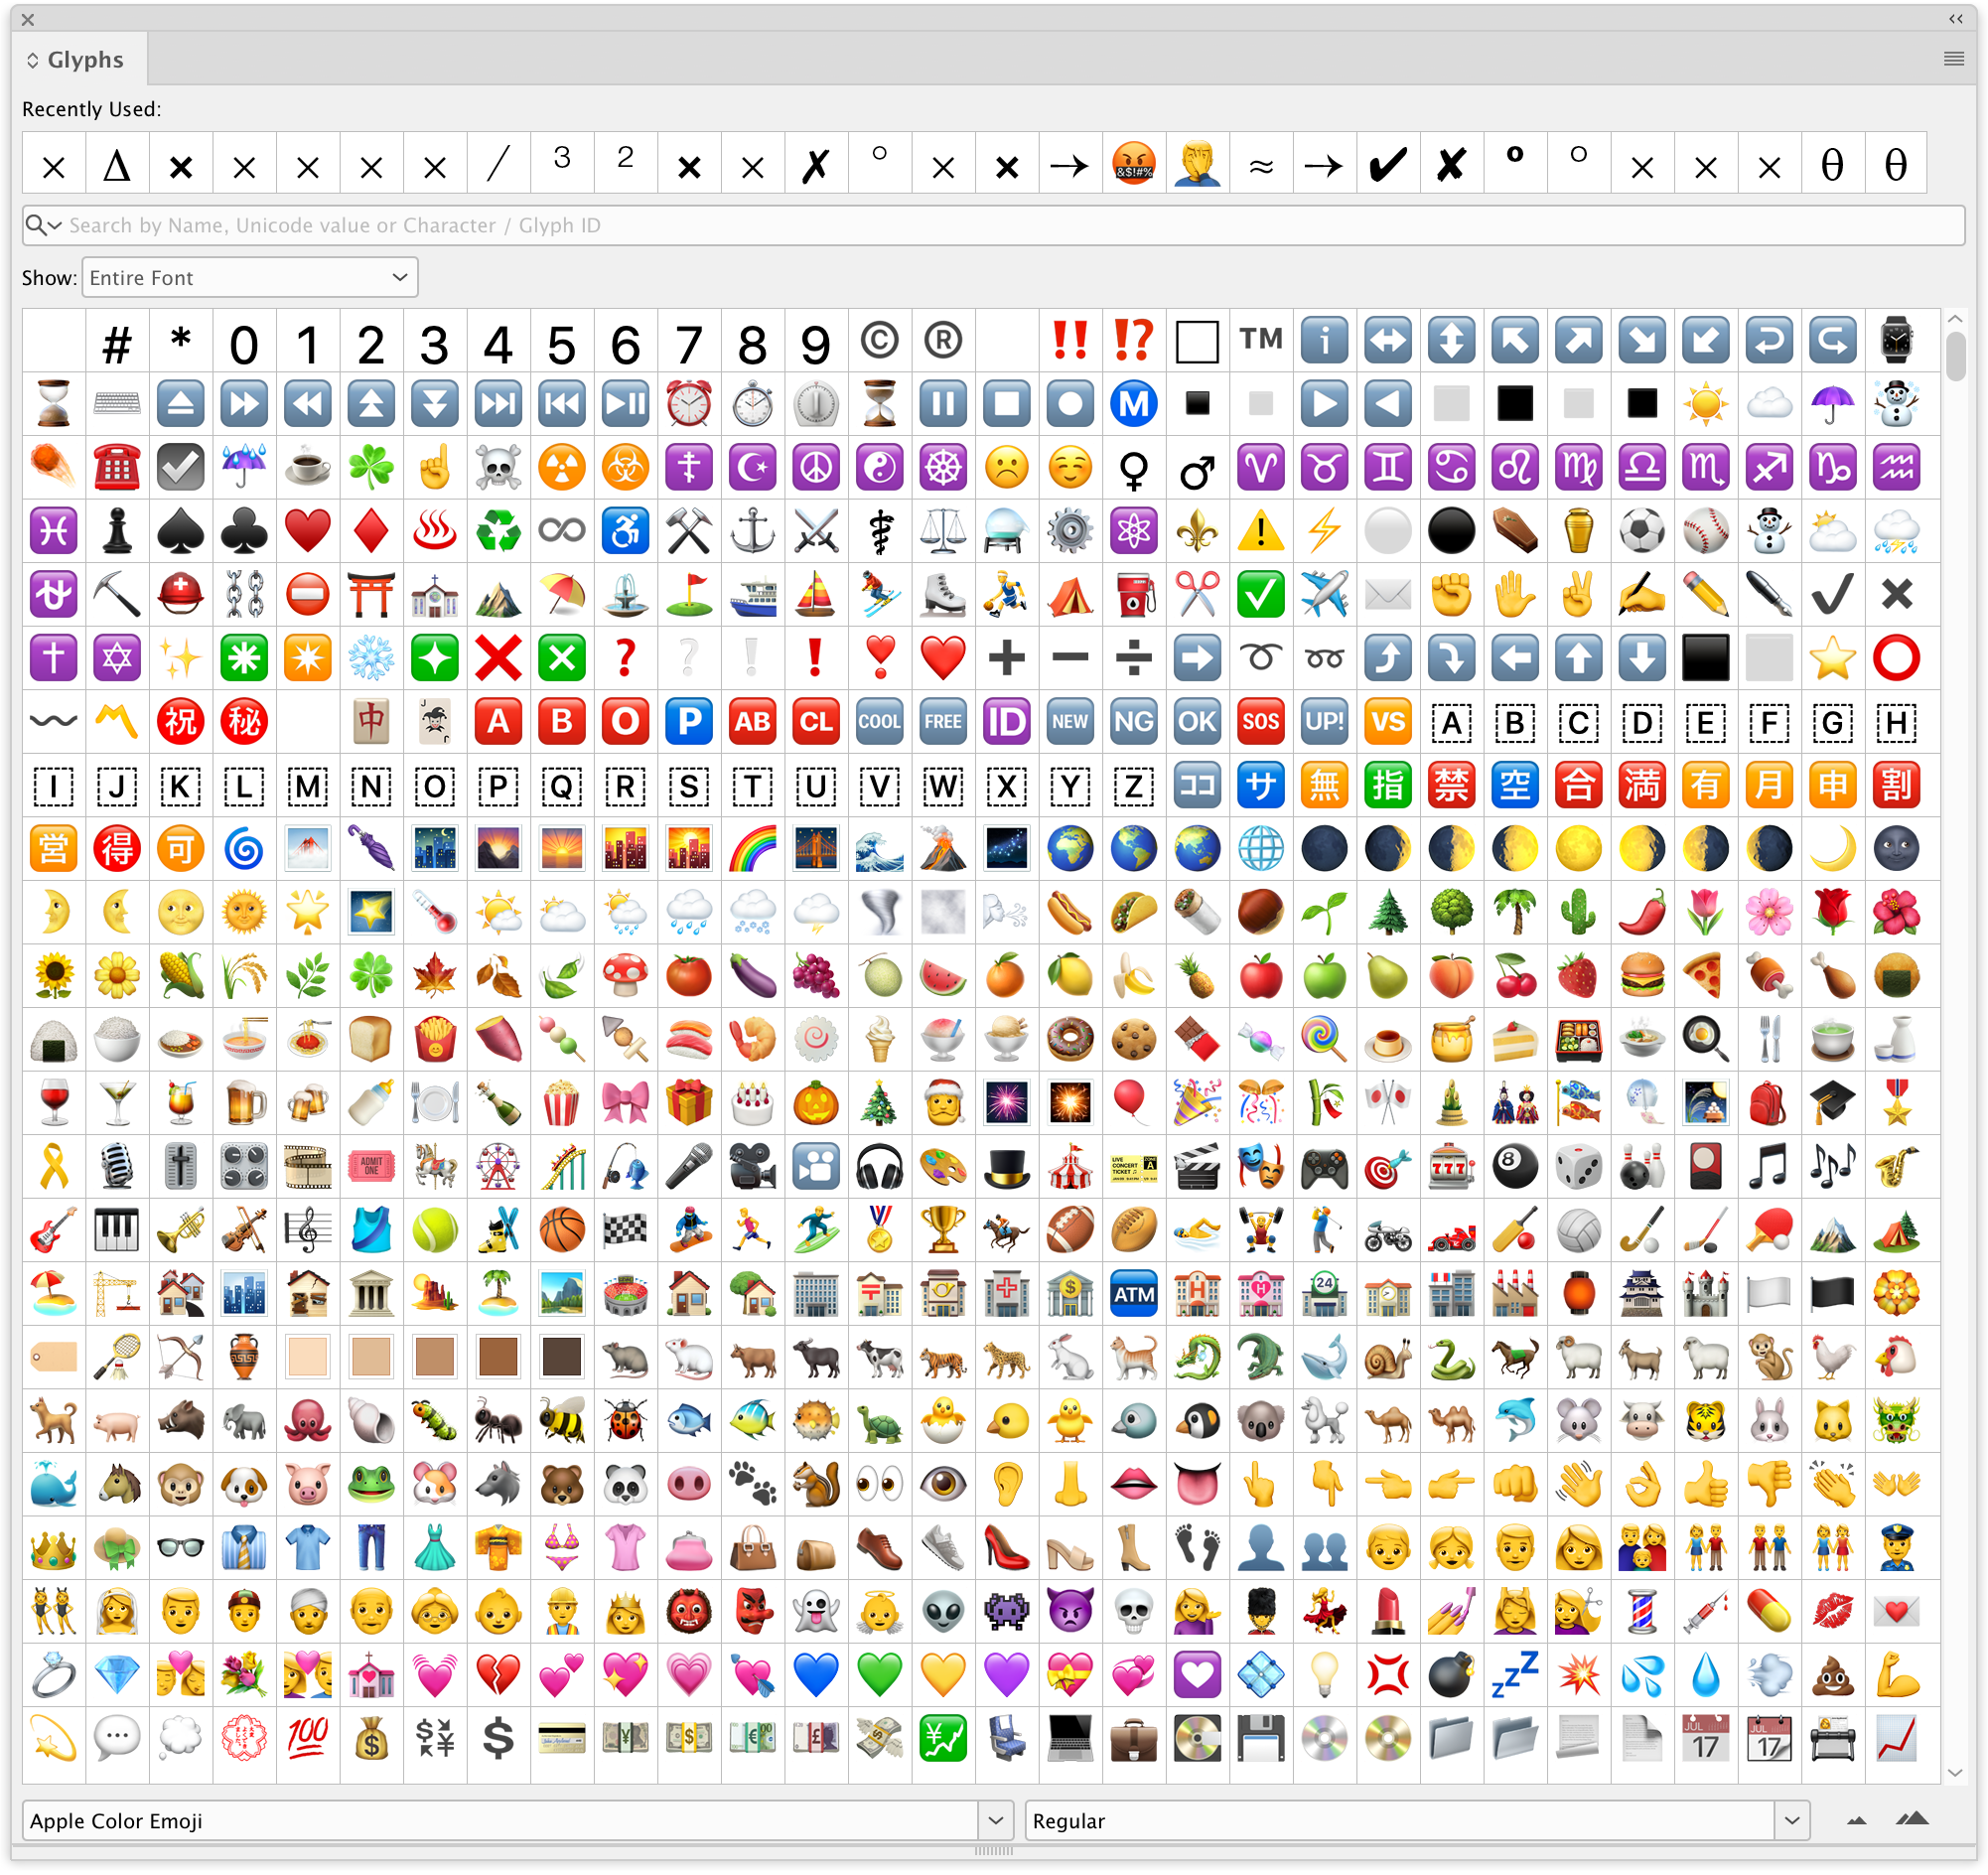 Emoji Letters là một trong những chủ đề được người dùng Adobe Support Community quan tâm trên khắp thế giới. Tại đó, bạn sẽ tìm thấy những tài liệu hữu ích và cập nhật về cách sử dụng font chữ và emoji để làm nổi bật các thiết kế của mình. Hãy cùng tham gia vào cộng đồng này và trao đổi để nâng cao kỹ năng thiết kế của bạn.